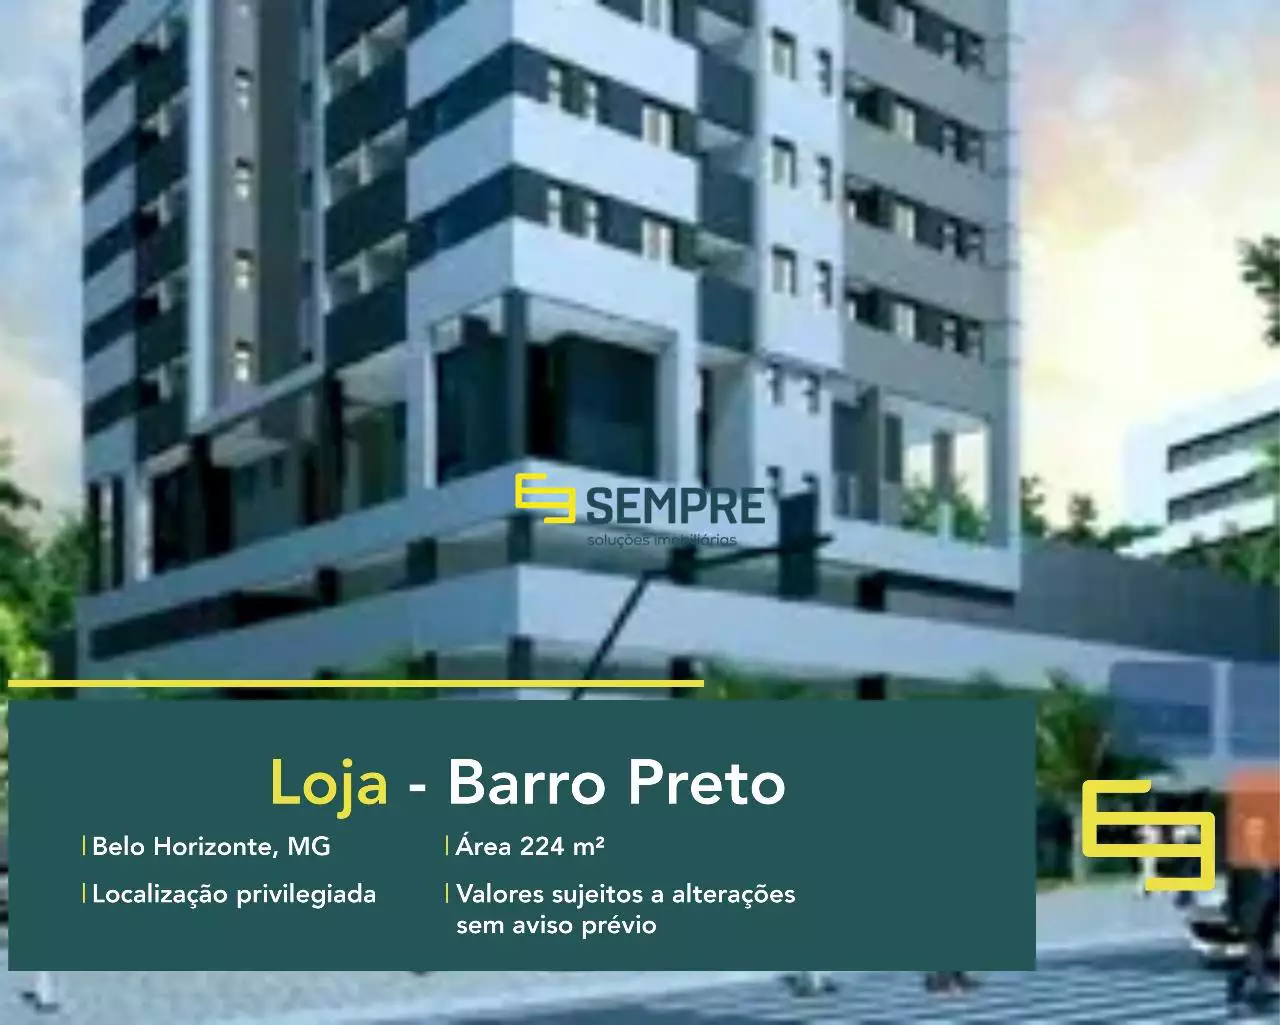 Loja à venda no bairro Barro Preto em Belo Horizonte, em excelente localização. O estabelecimento comercial conta com área de 224,51 m².